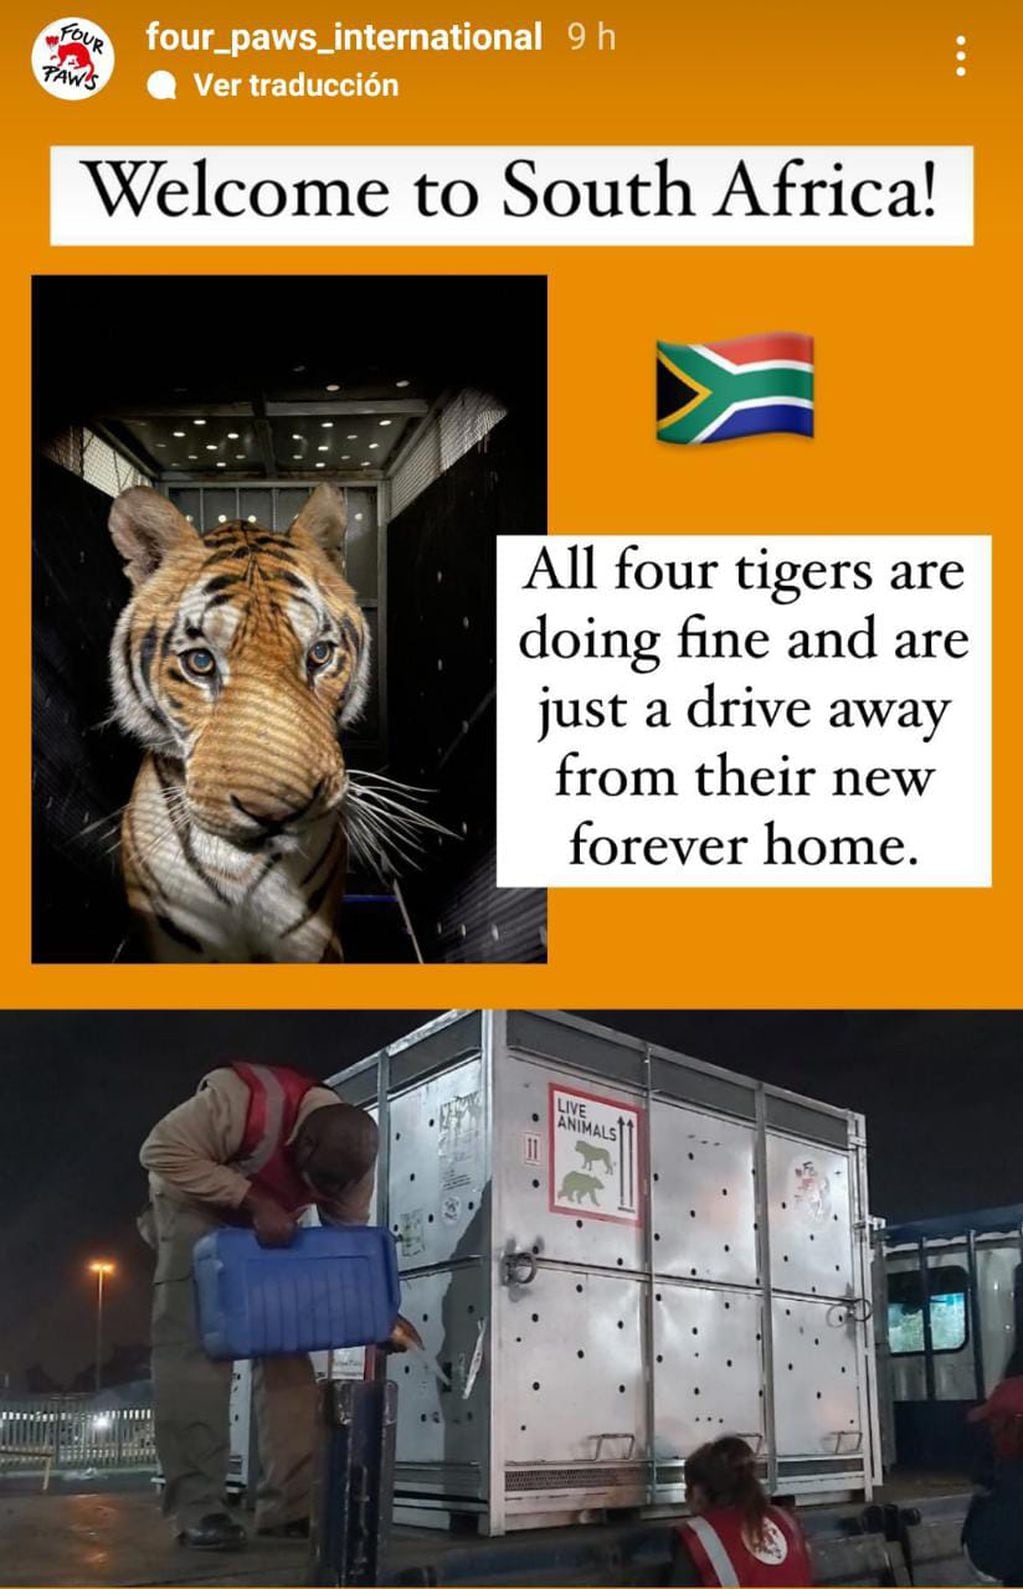 "Bienvenidos a Sudáfrica. Nuestros tigres están bien y sólo a unos pasos de su nuevo hogar para siempre".